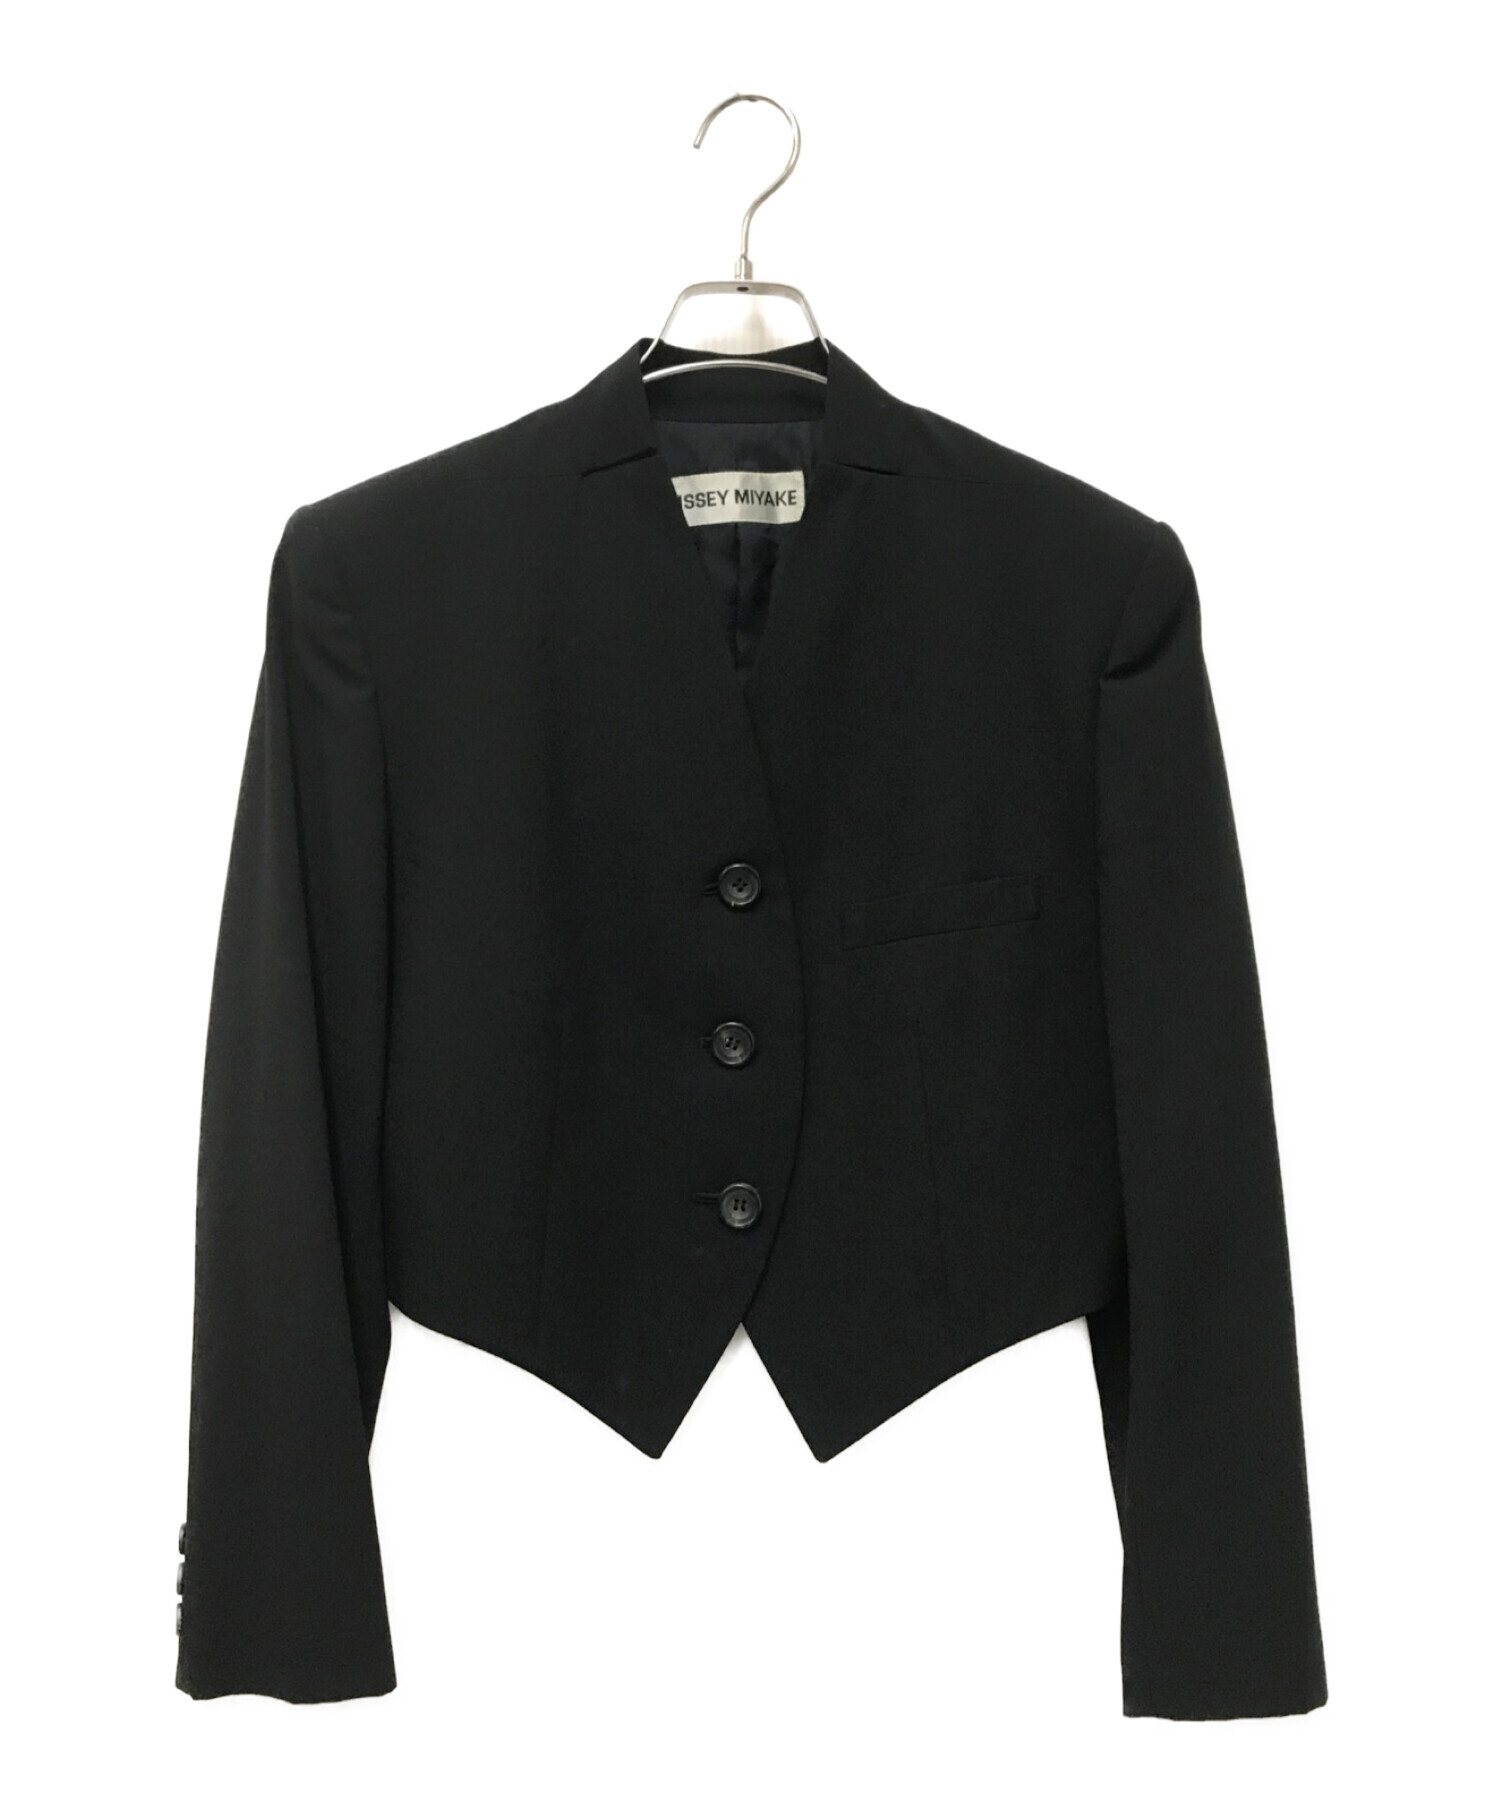 ISSEY MIYAKE ジャケット ブラック M size スーツ - テーラードジャケット